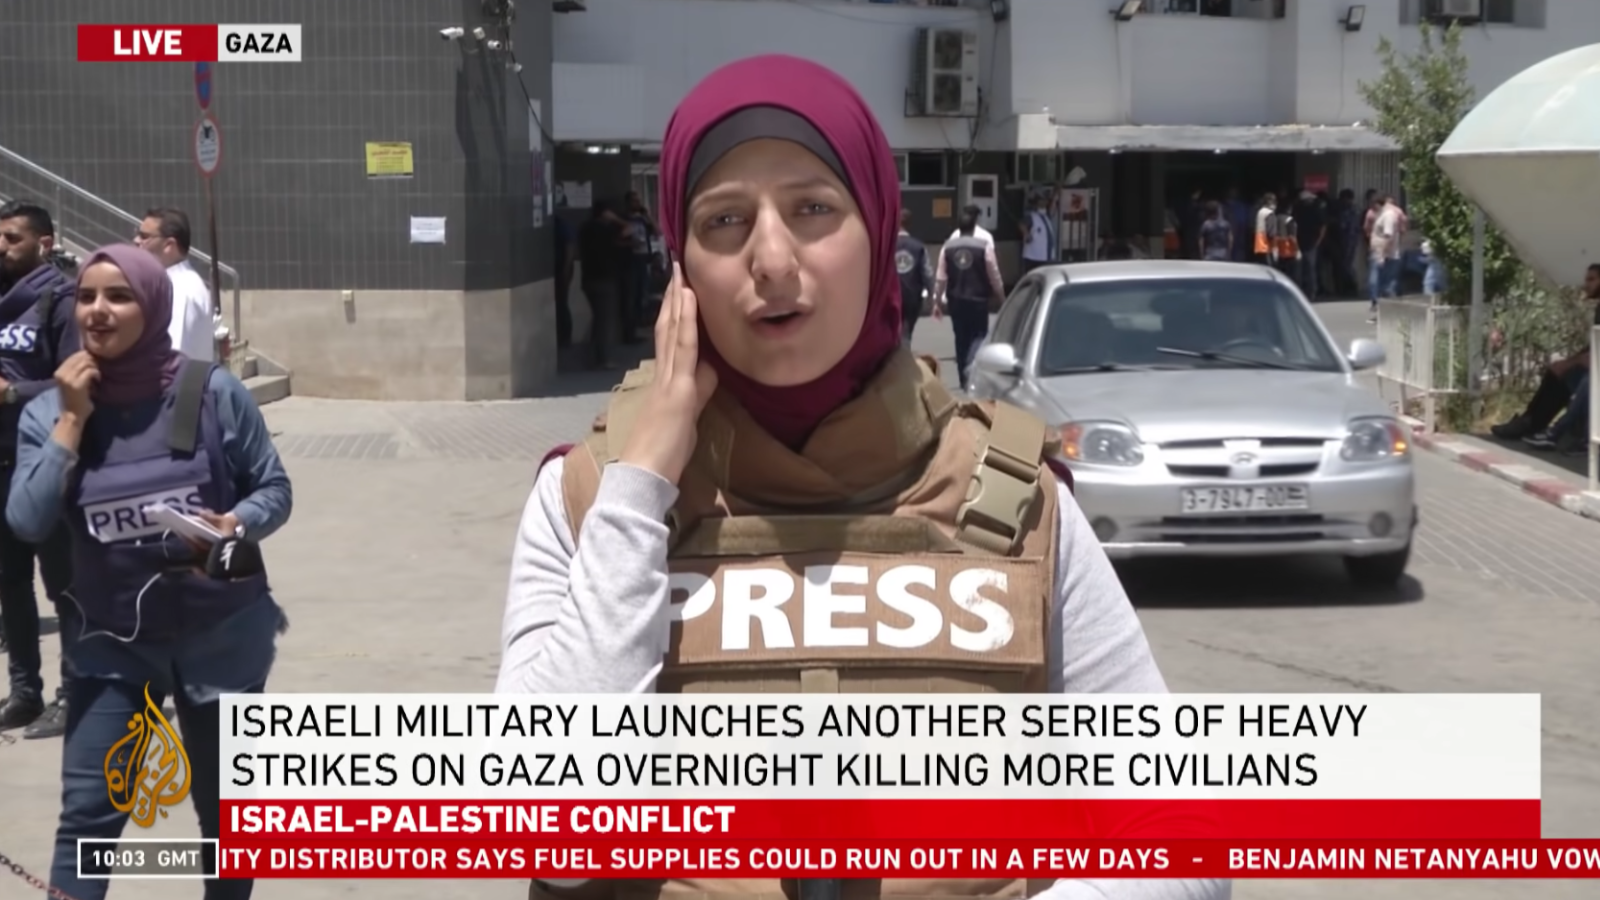 La reportera Youmna ElSayed transmite en vivo desde el hospital Al-Shifa de la ciudad de Gaza